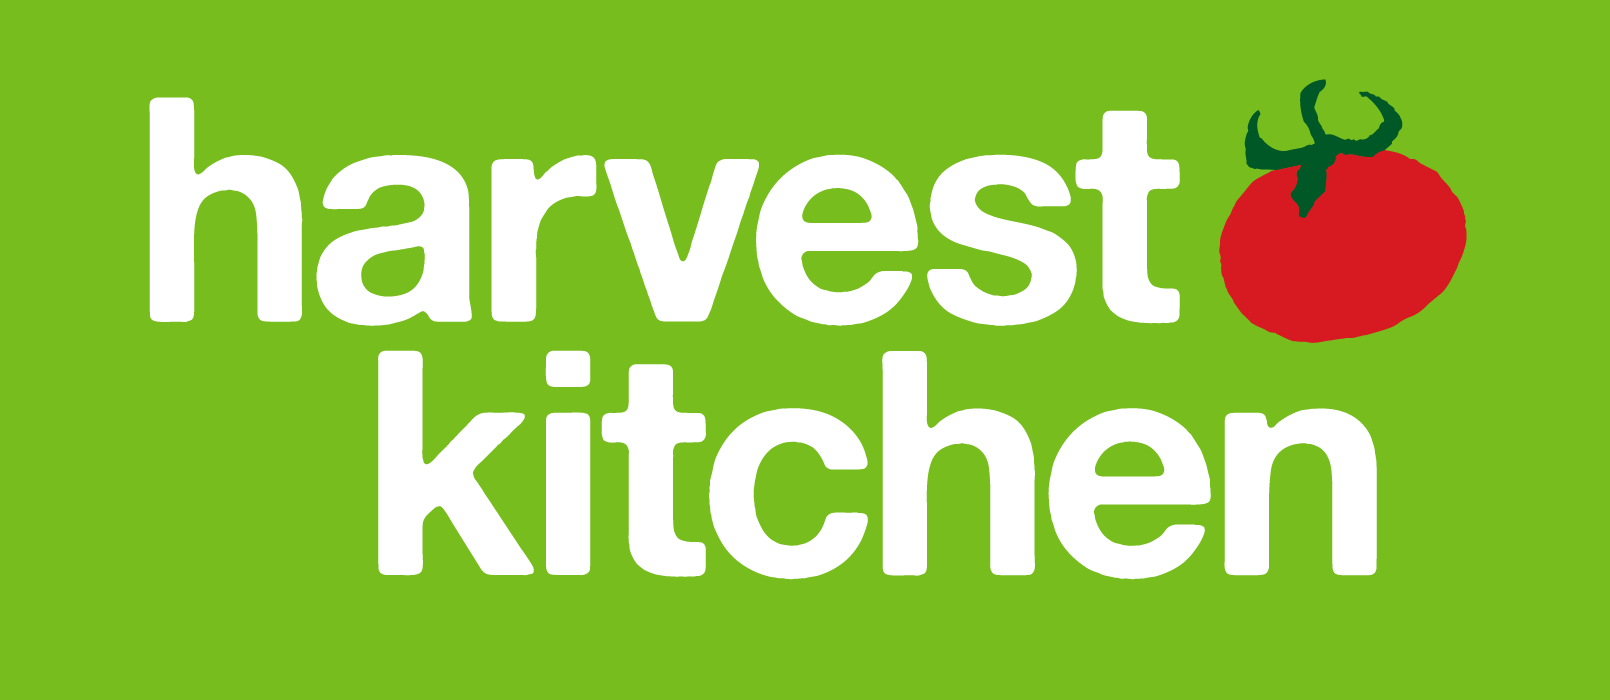 Harvest Kitchen Logo - GreenBG.png